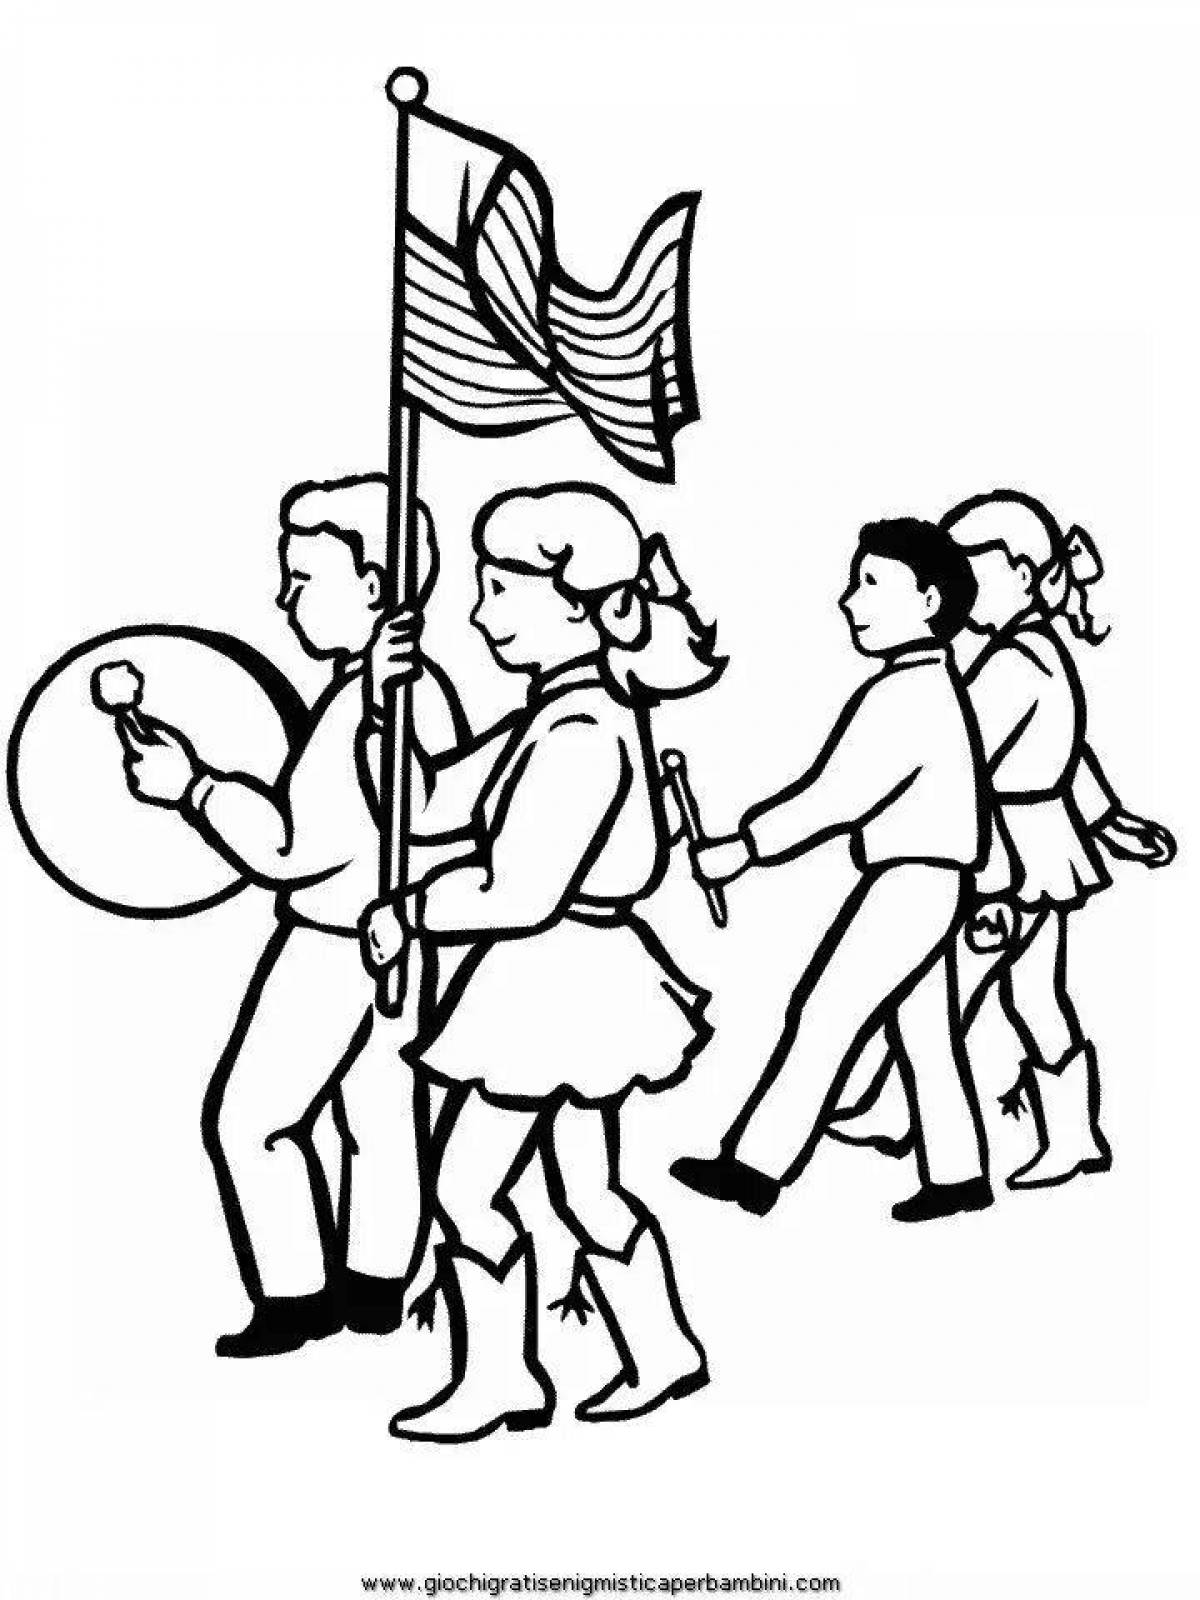 Иллюстрация к маршу